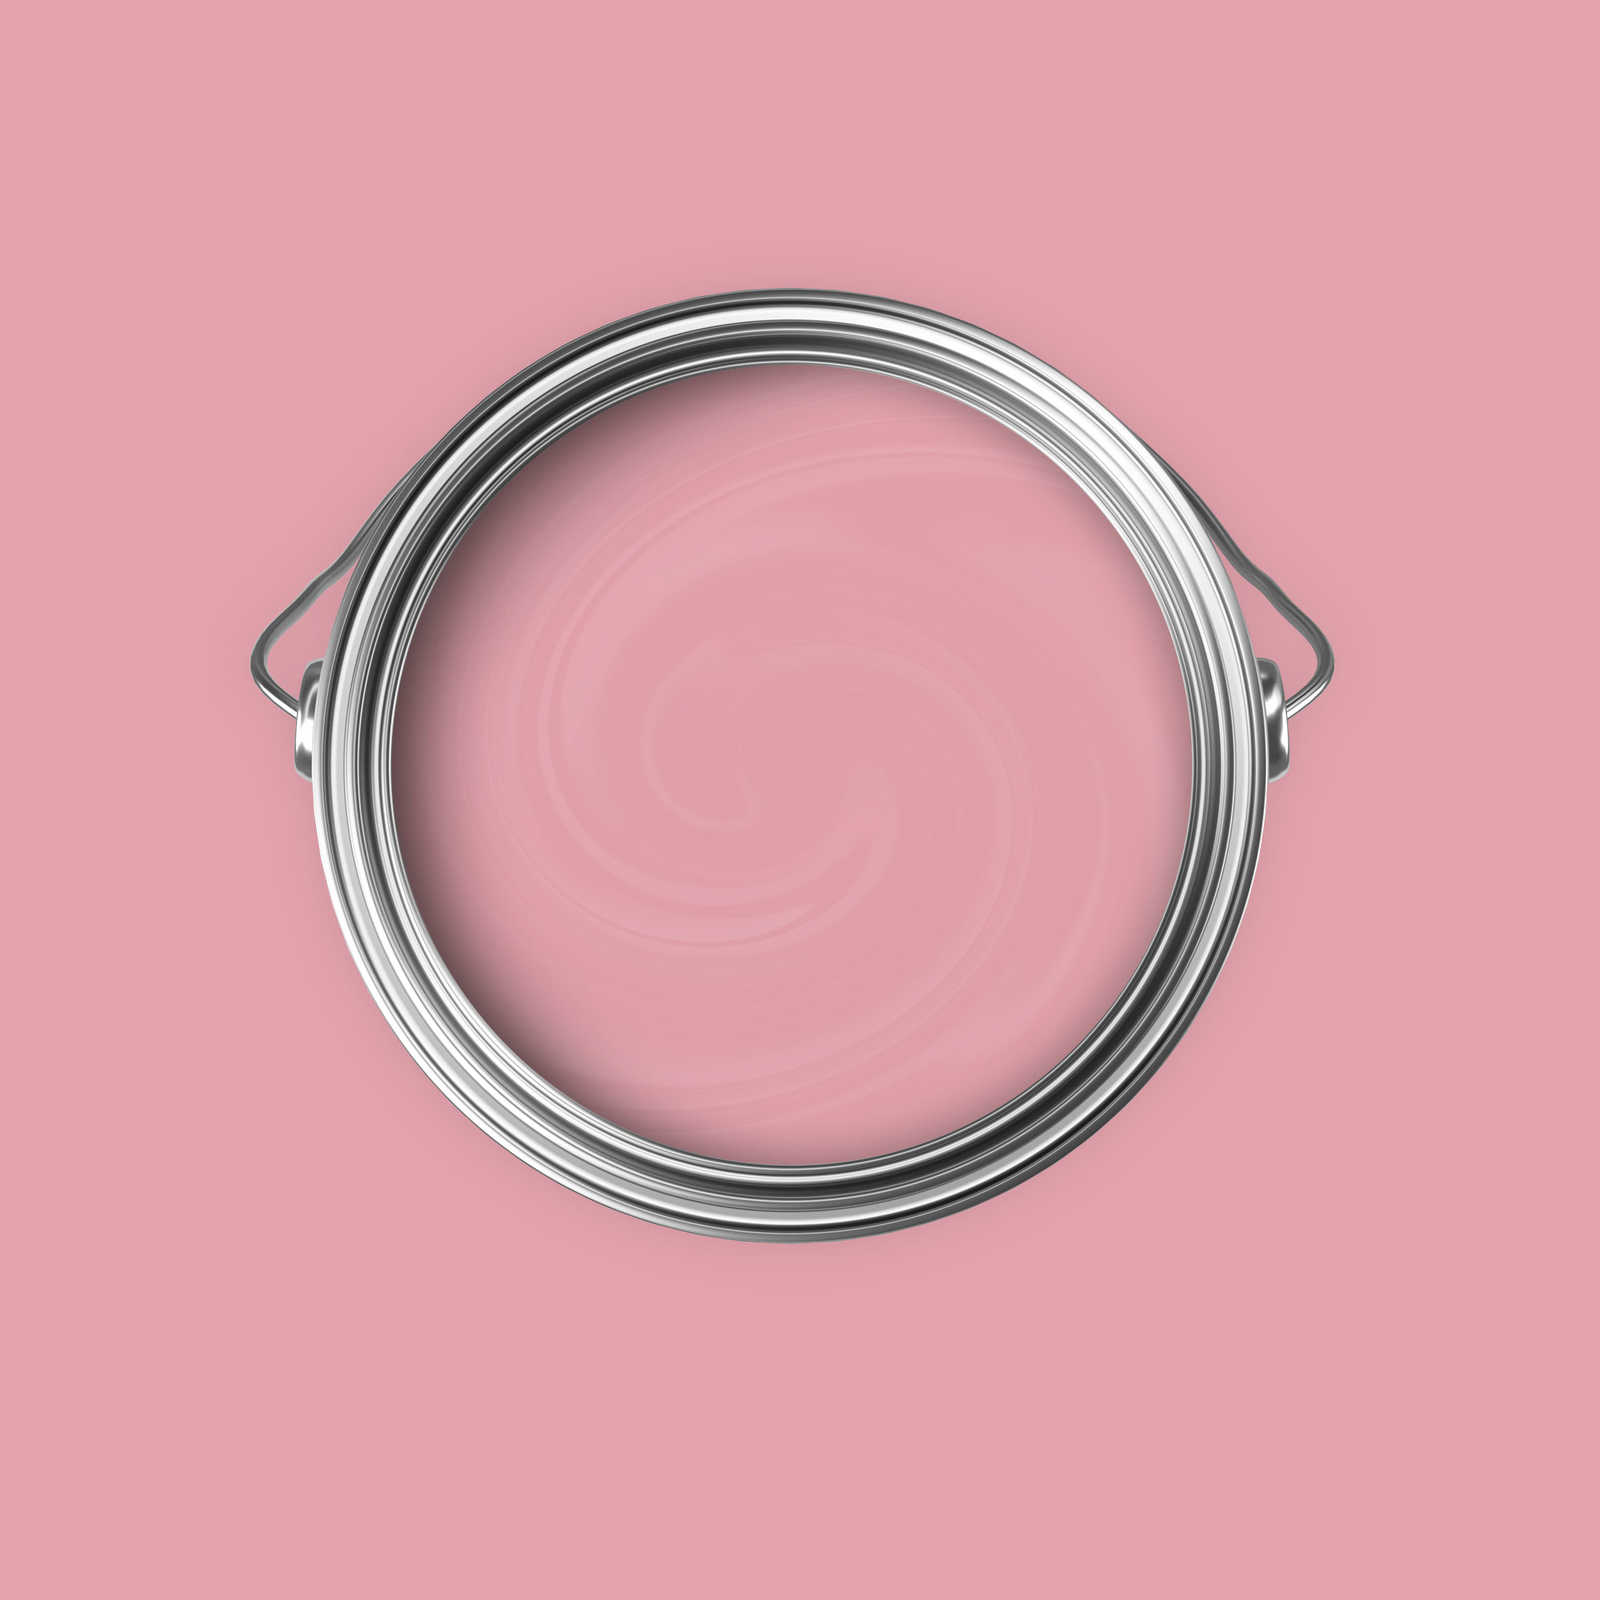             Pittura murale Premium rosa baby allegro »Blooming Blossom« NW1017 – 5 litri
        